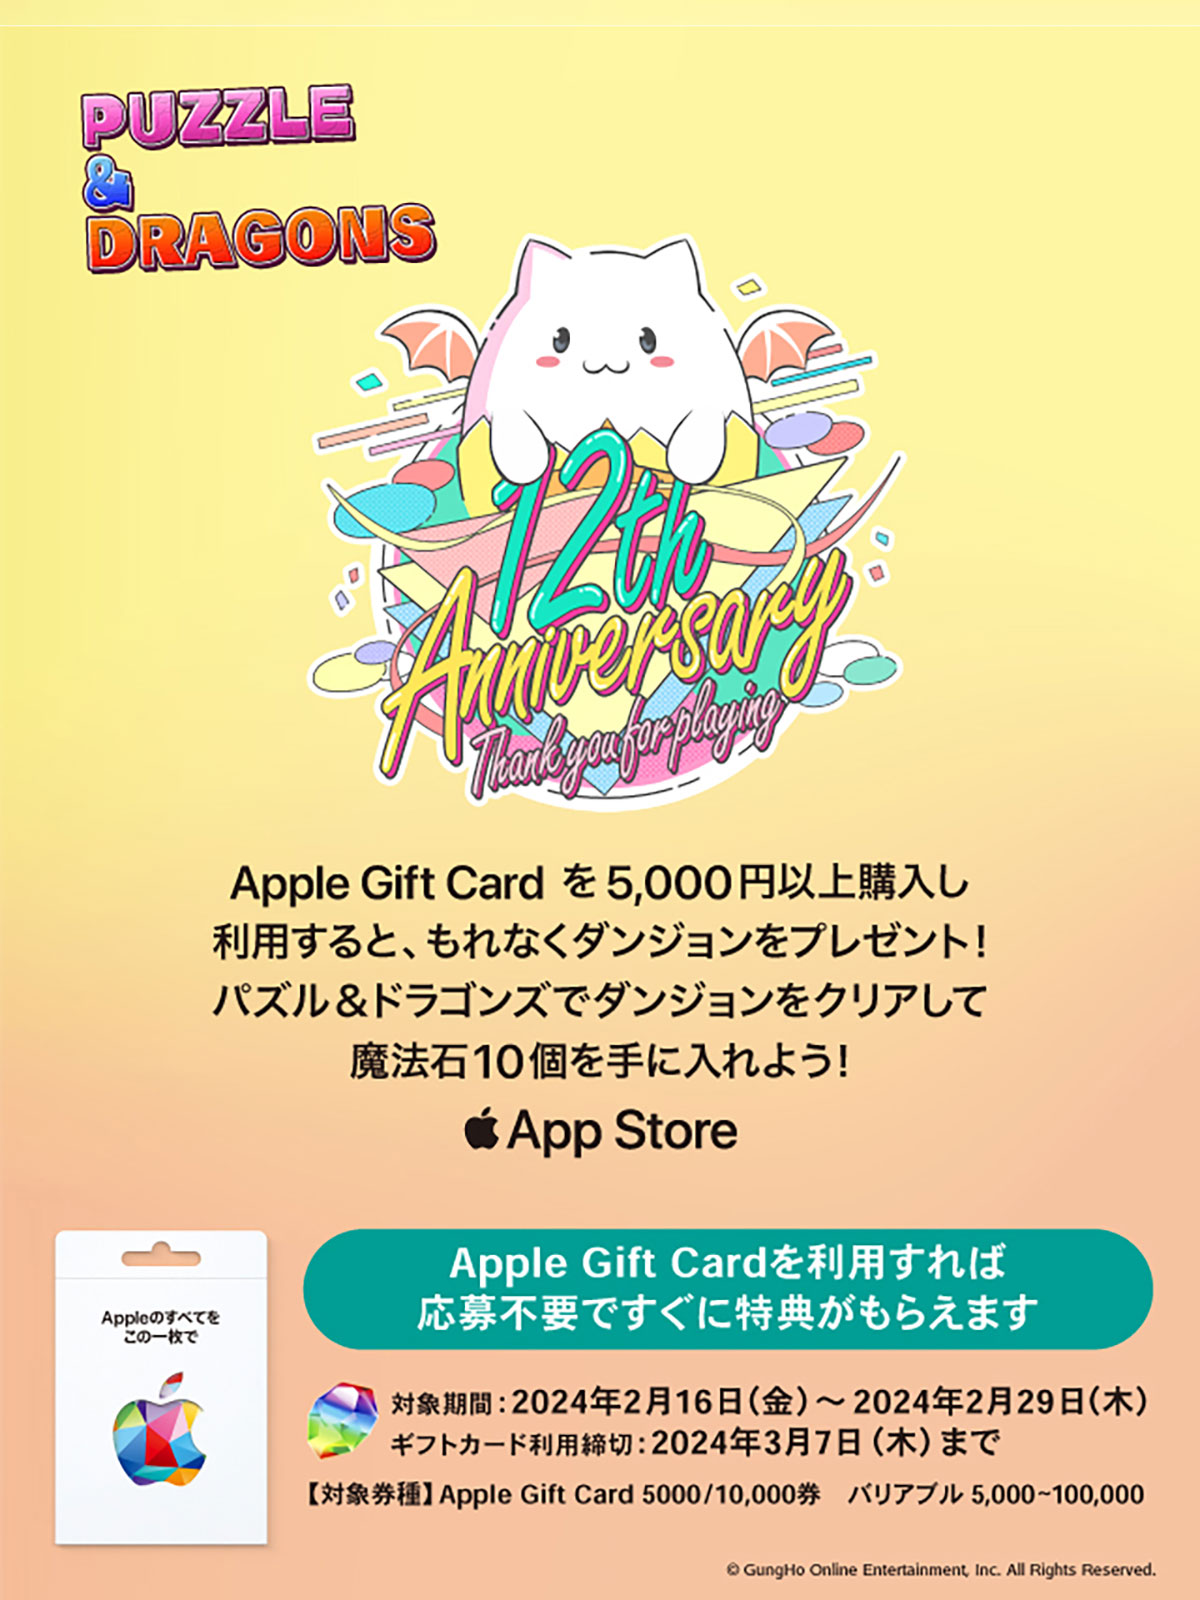 Apple Gift Card パズル＆ドラゴンズ キャンペーン